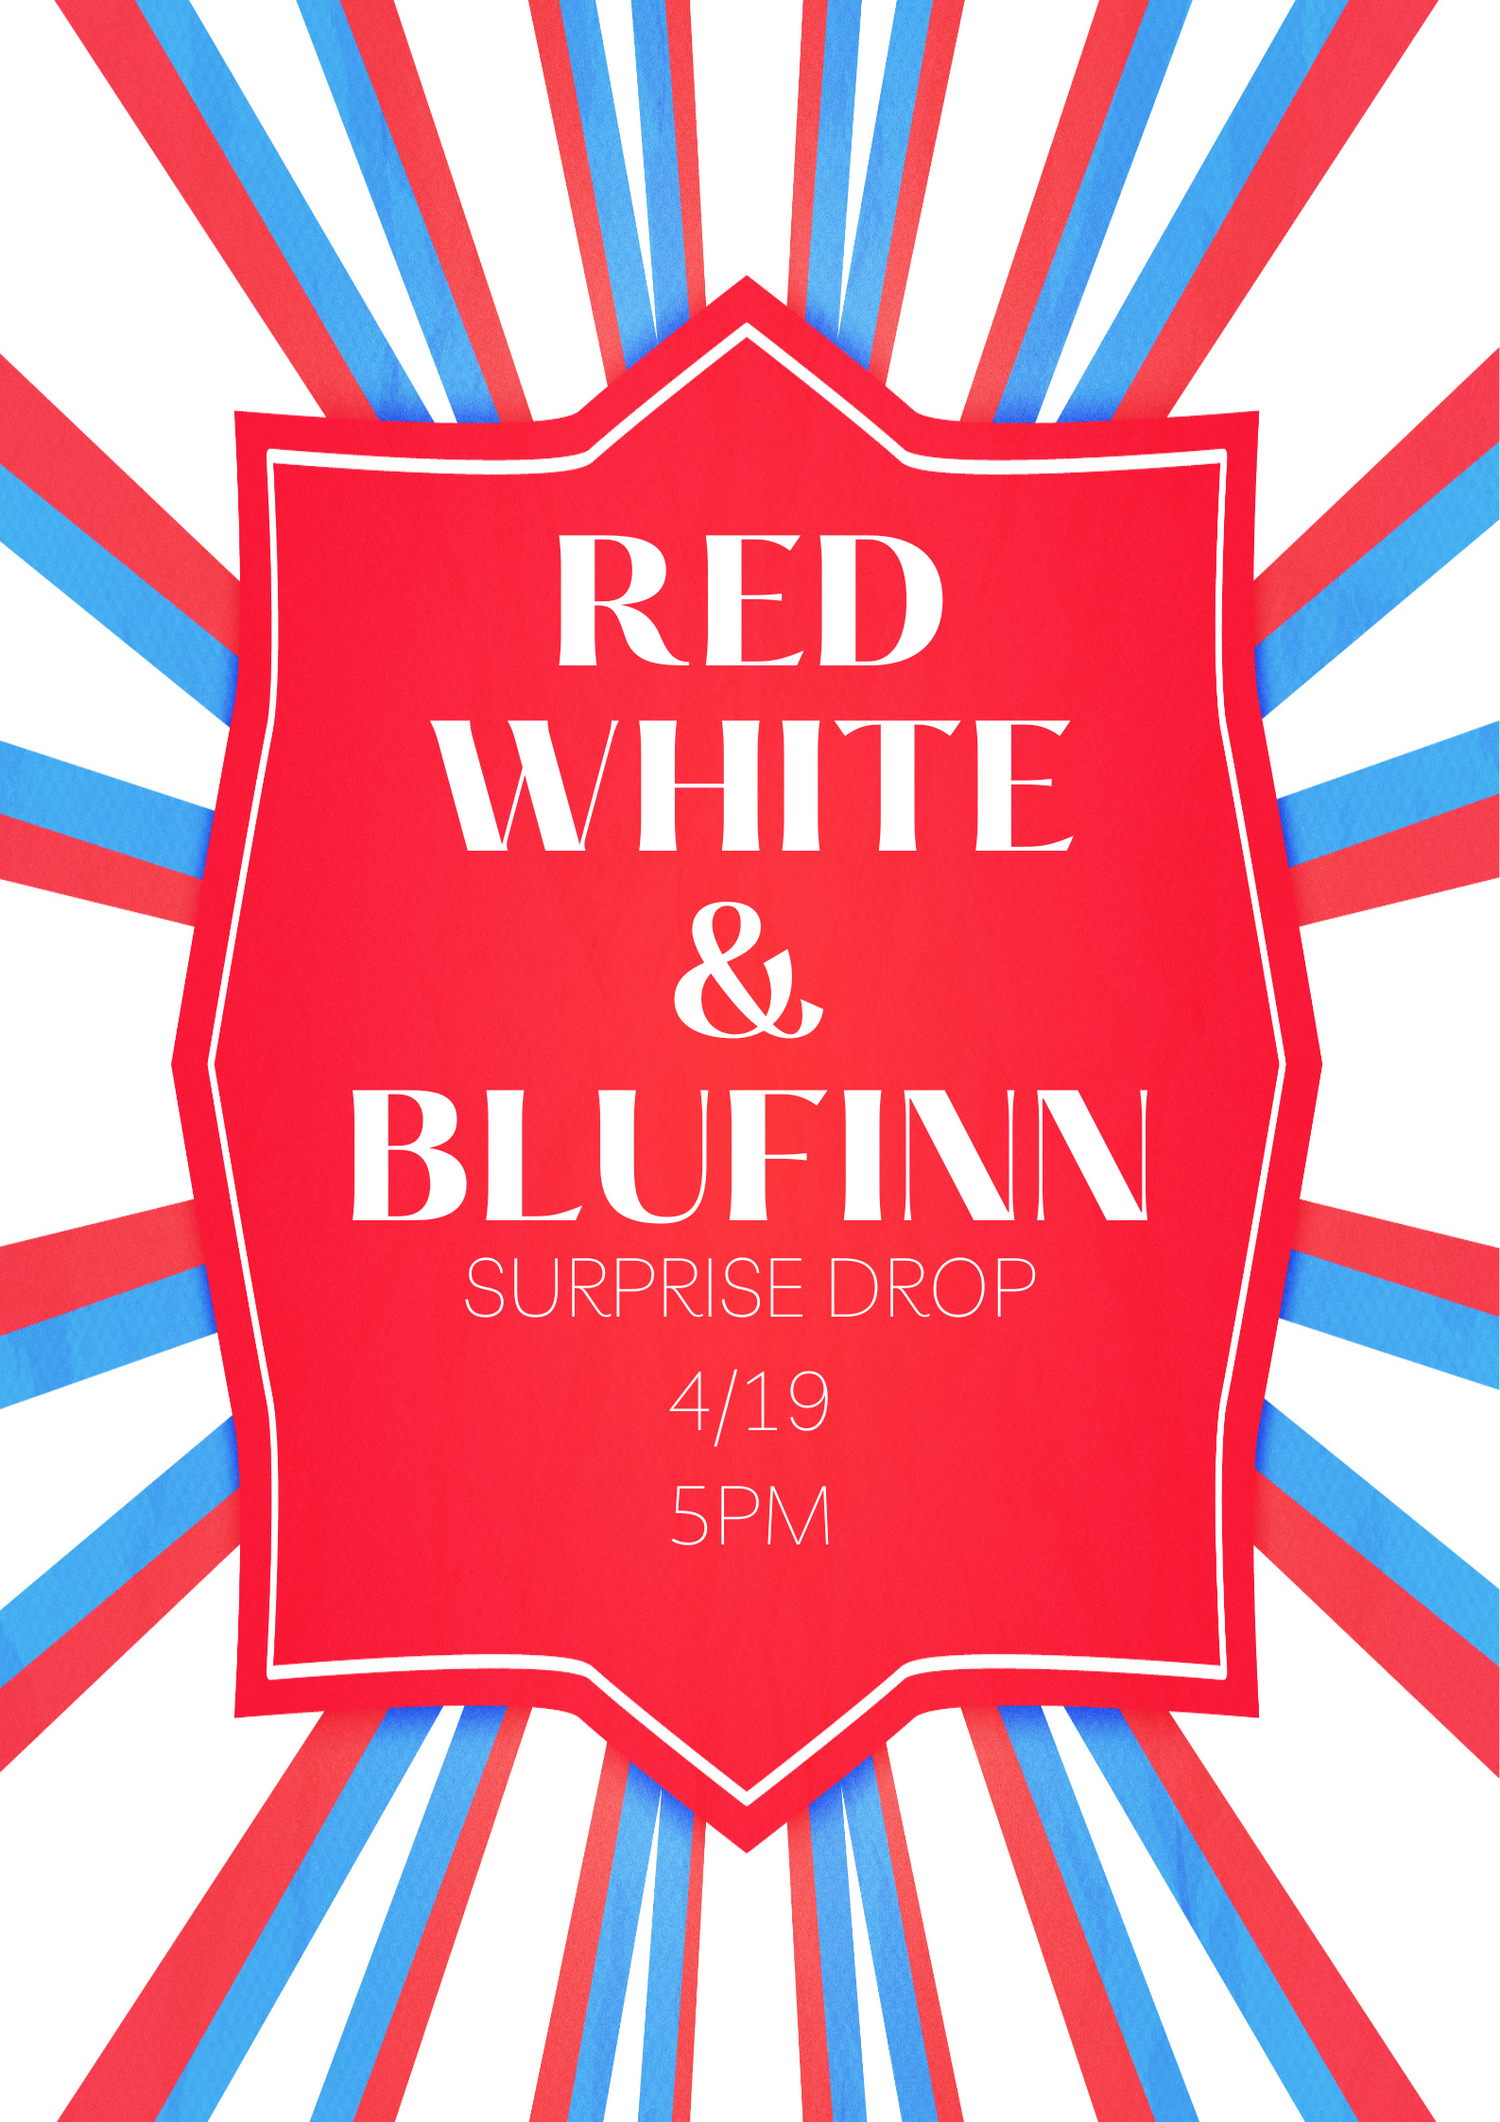 Red White&BluFinn